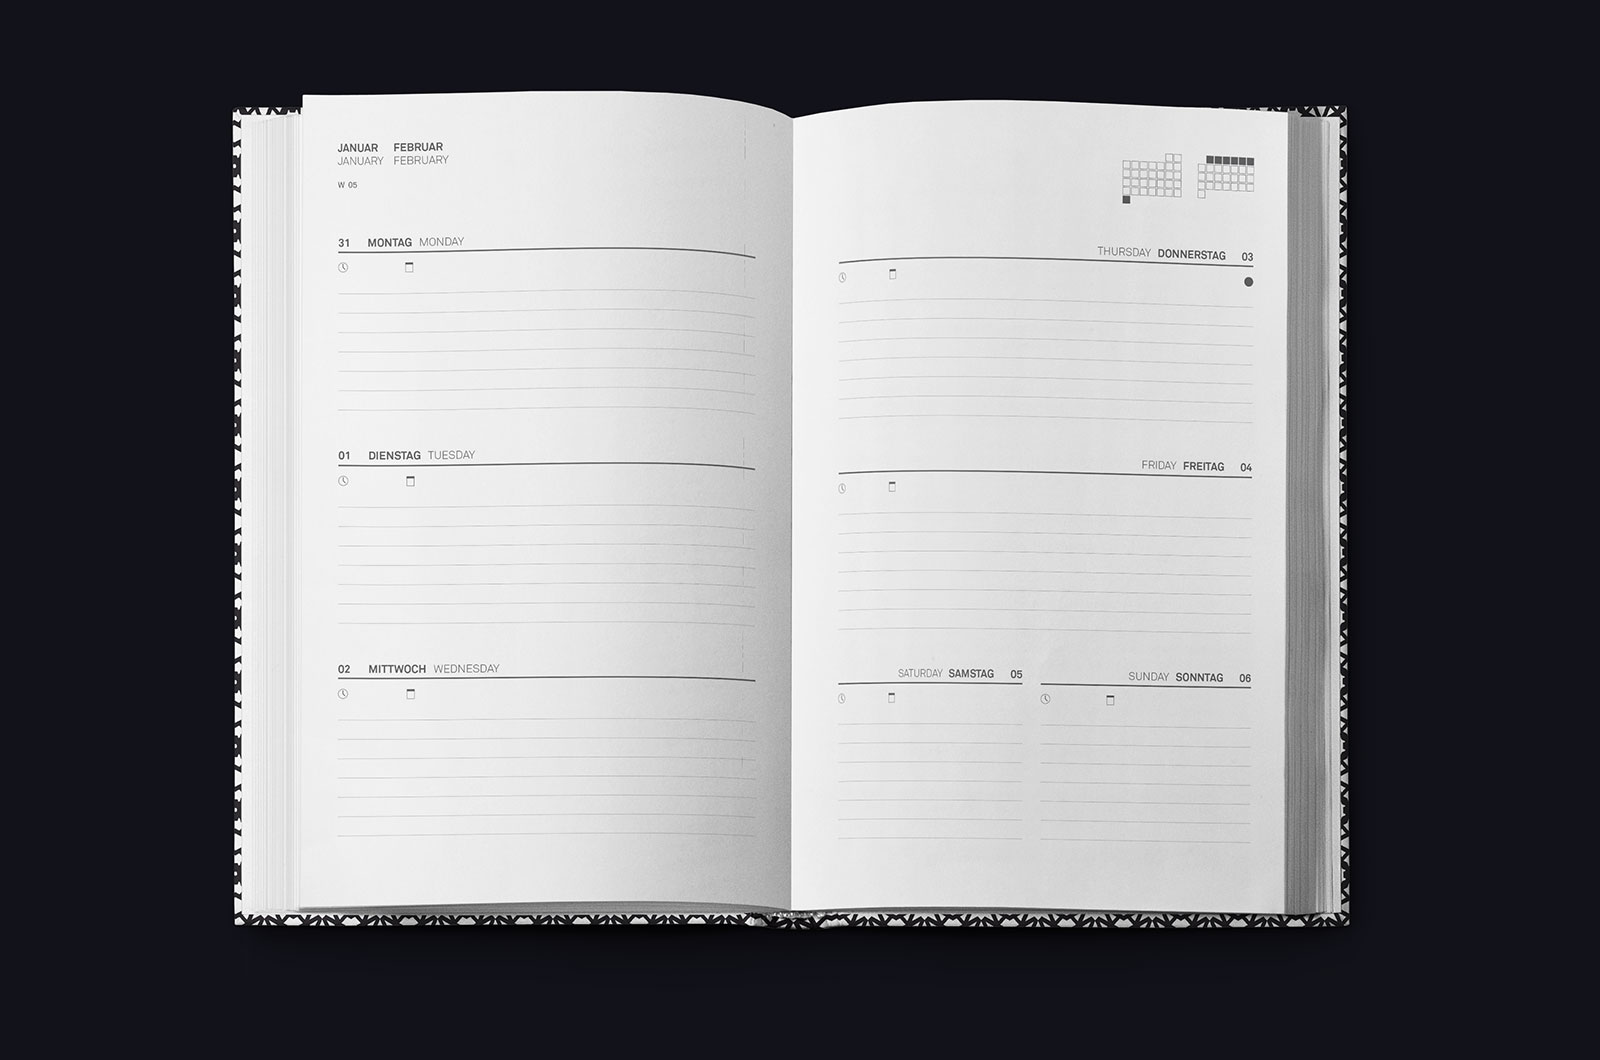 lexander Glante - Works - Zweitausendelf Calendar - 09